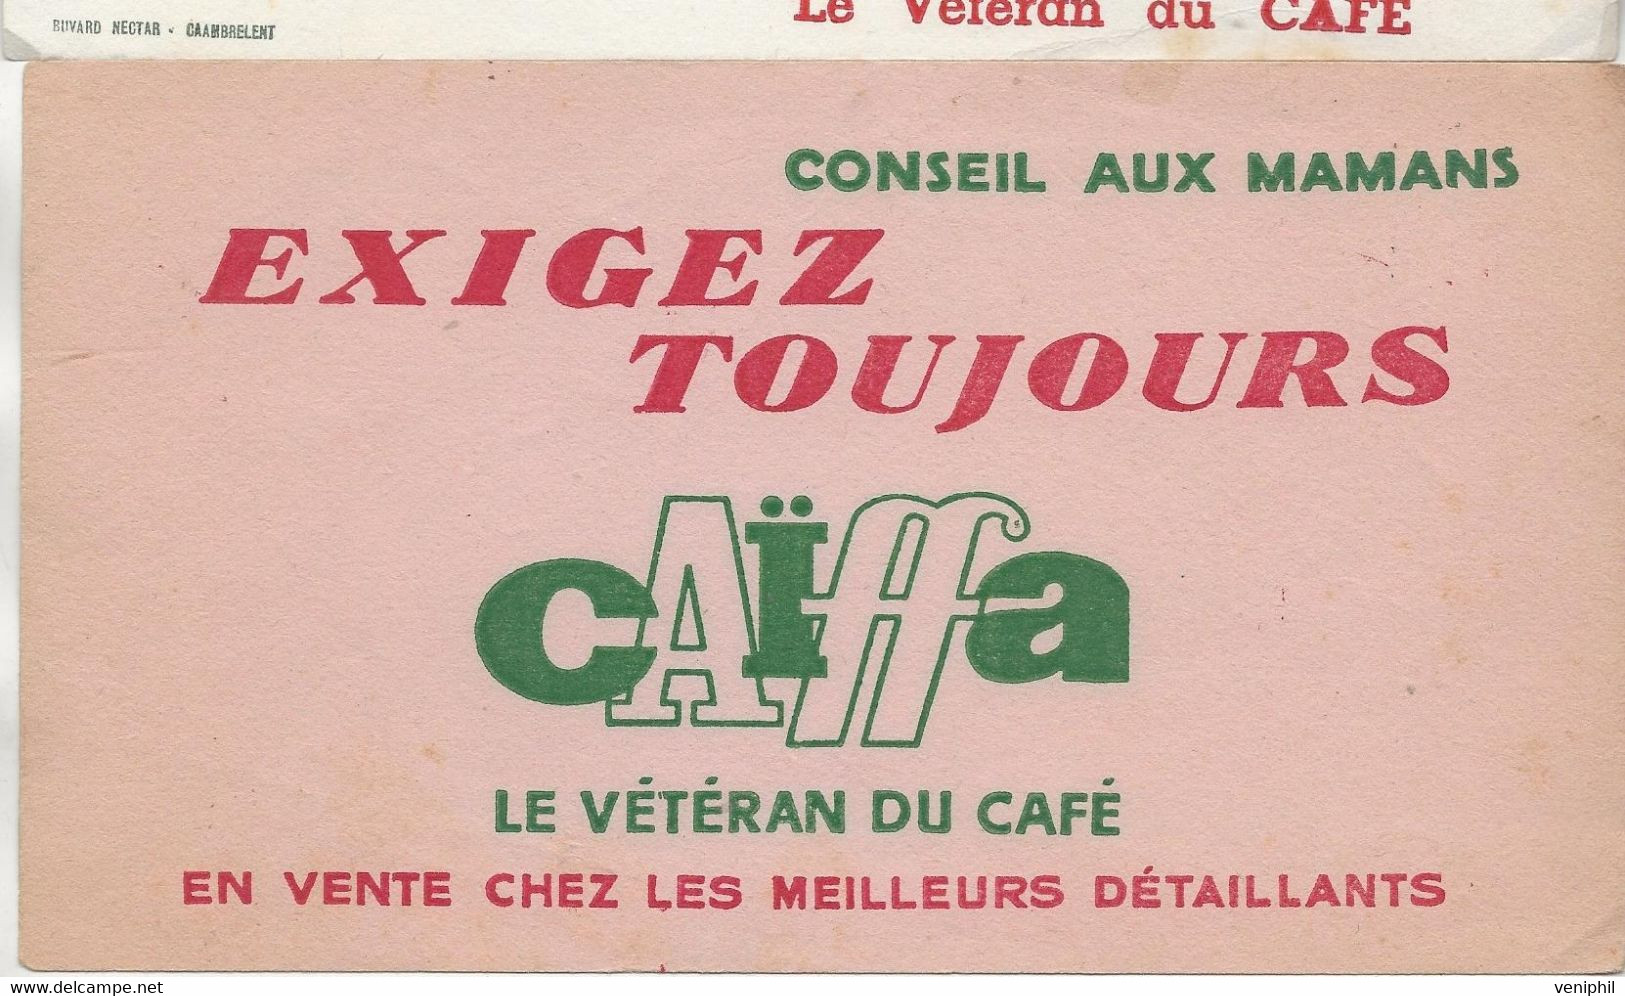 2 BUVARDS  CAFE -CAIFFA - 1956 - Coffee & Tea